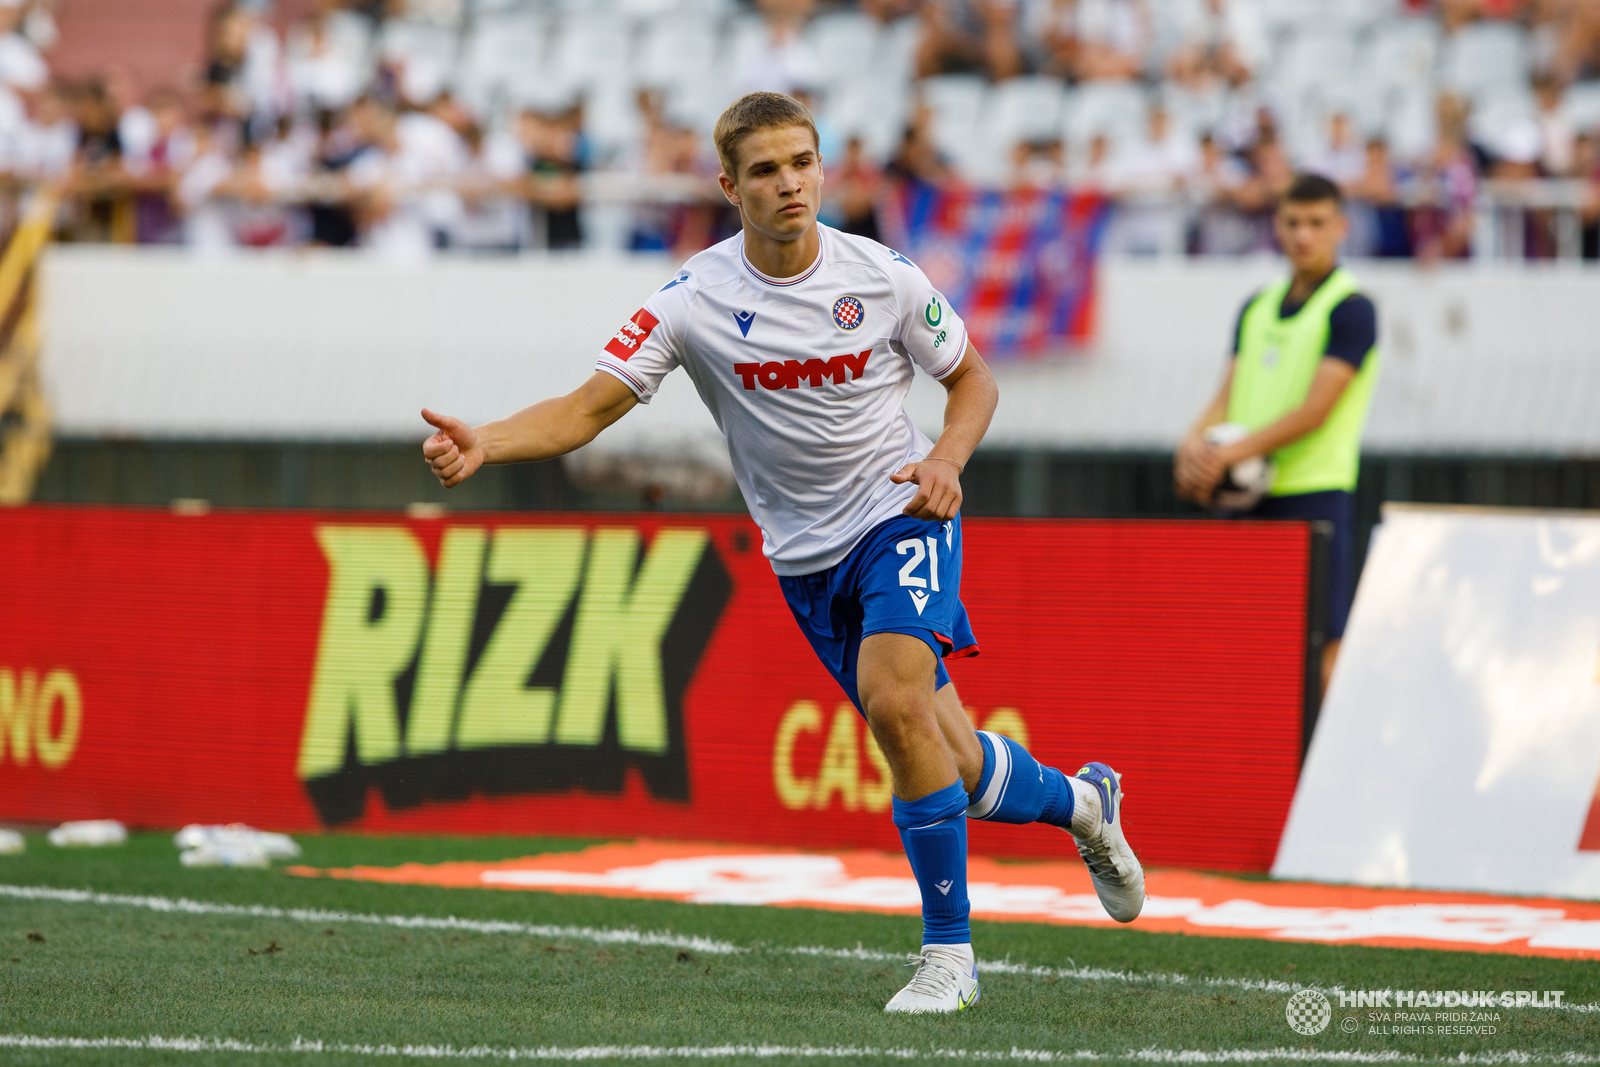 Rokas Pukstas starts today for Hajduk Split vs Rijeka : r/ussoccer